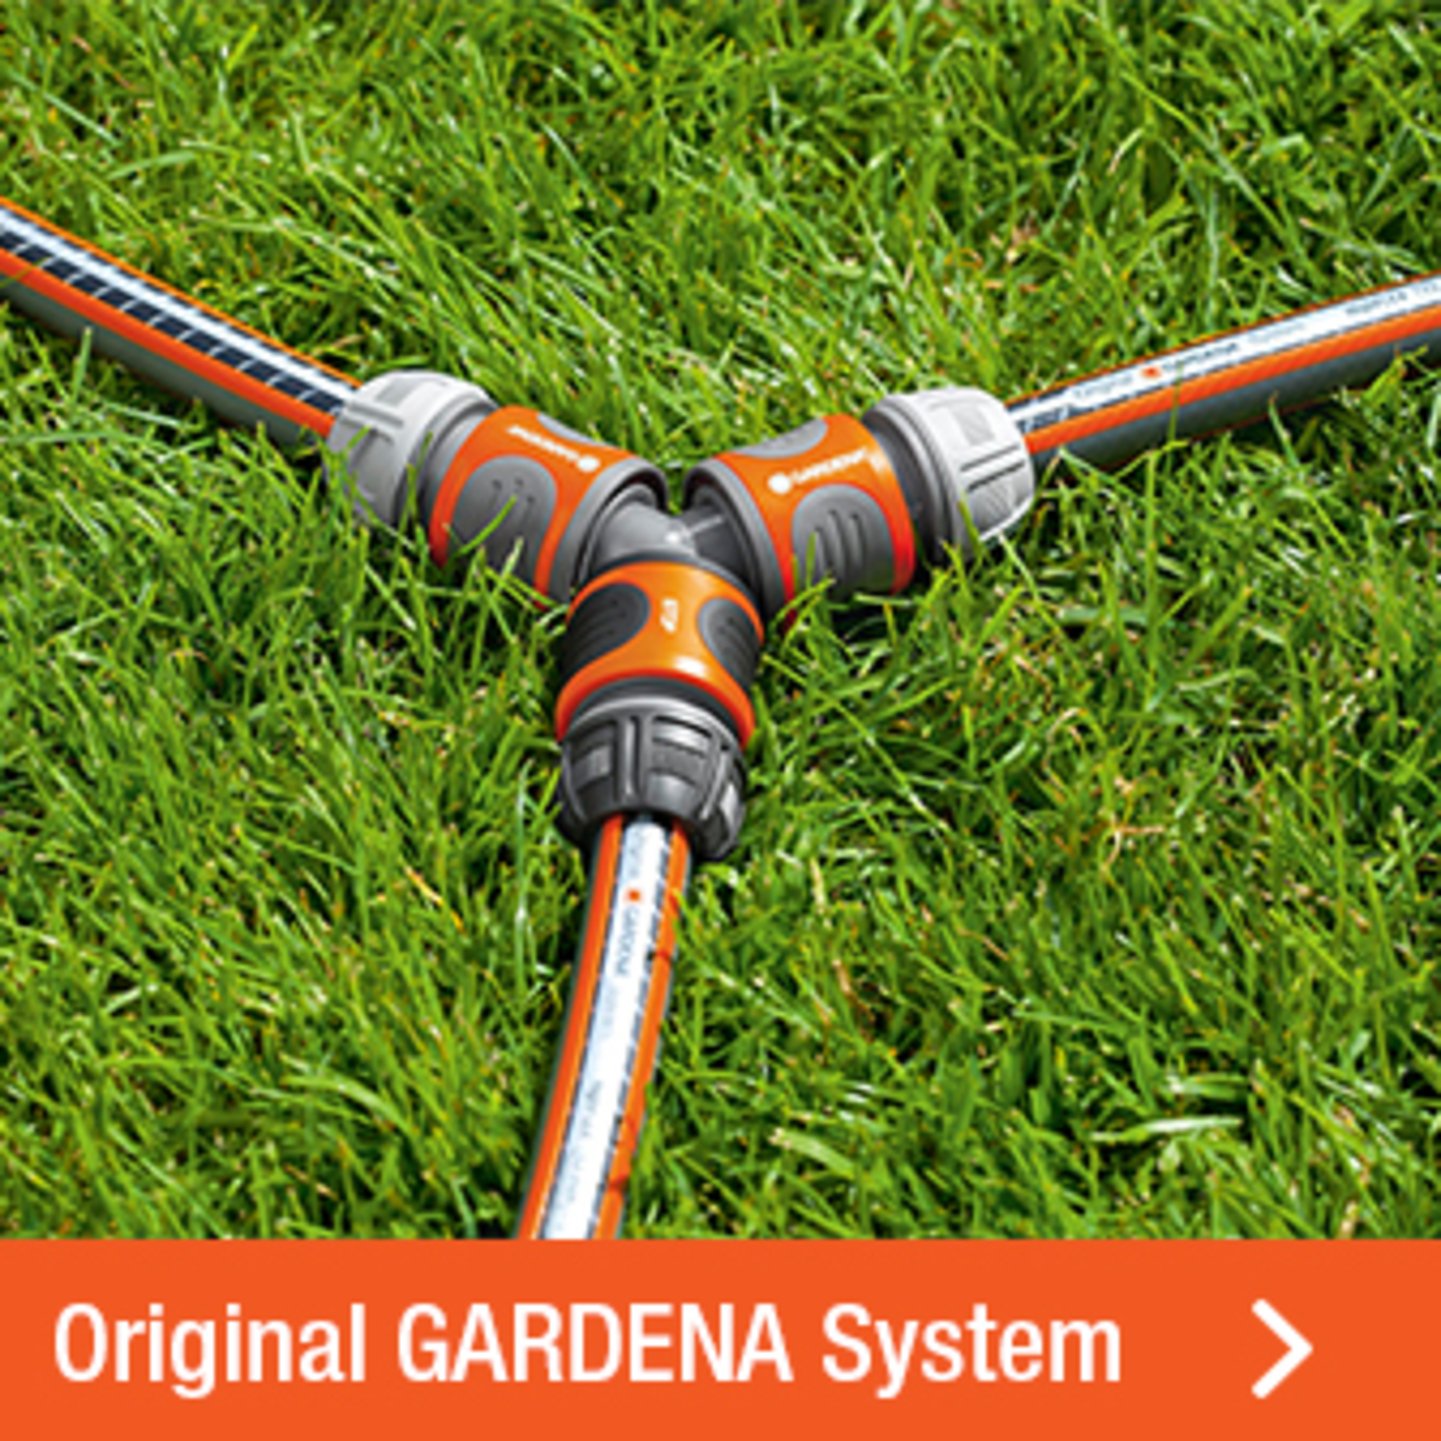 Original Gardena System